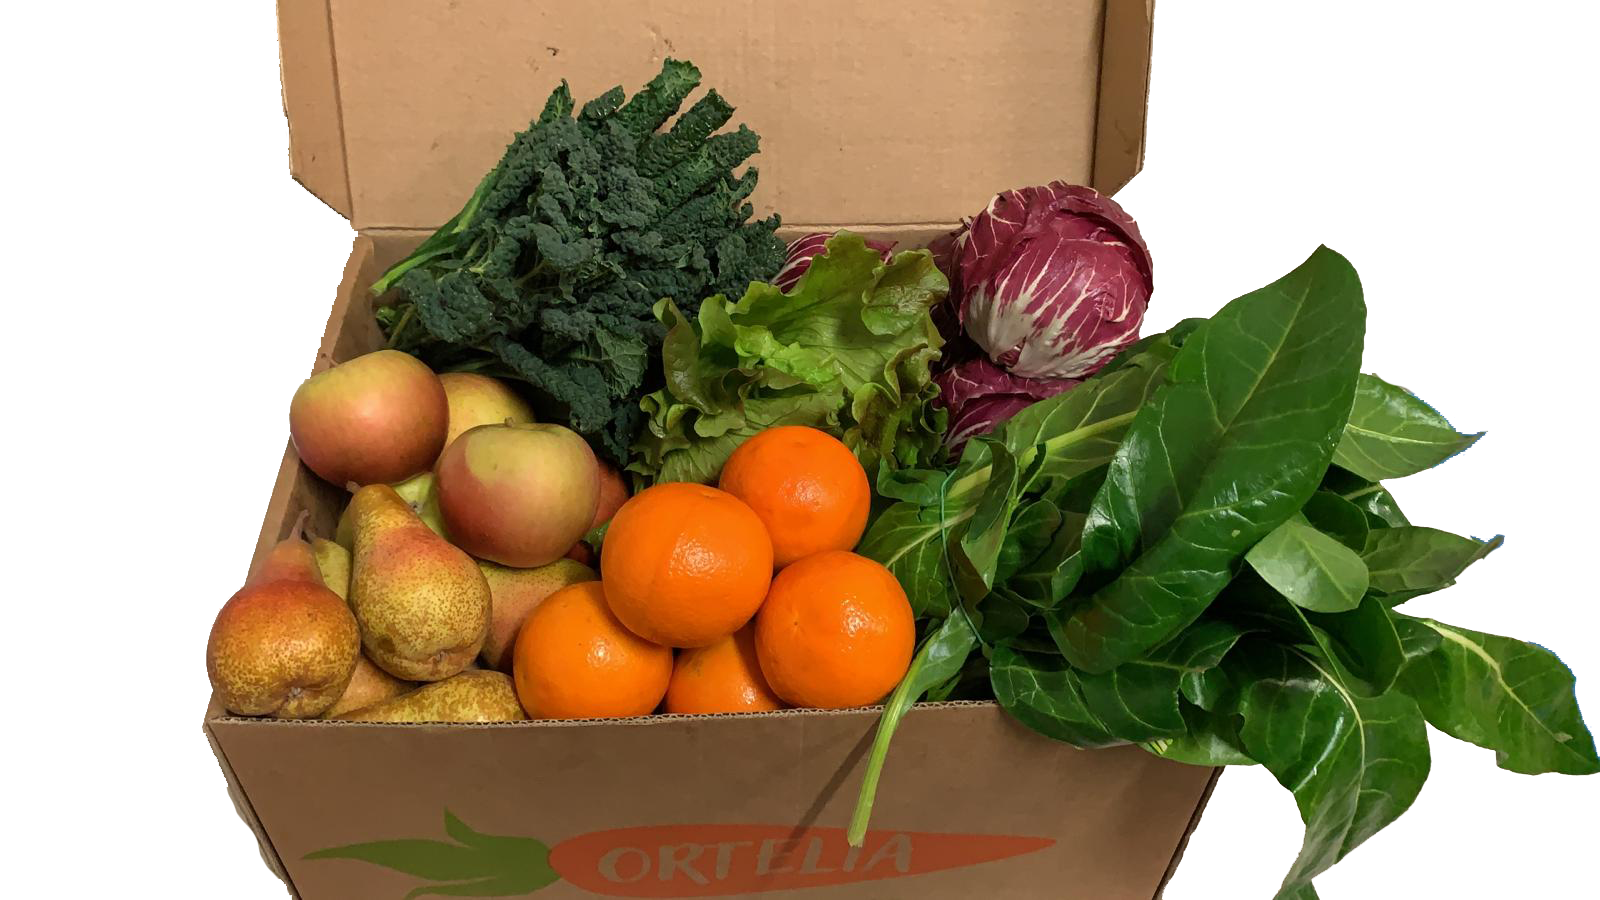 Ortelia Roma | Frutta e Verdura a Domicilio - Box della Settimana 10/16 Febbraio 2020